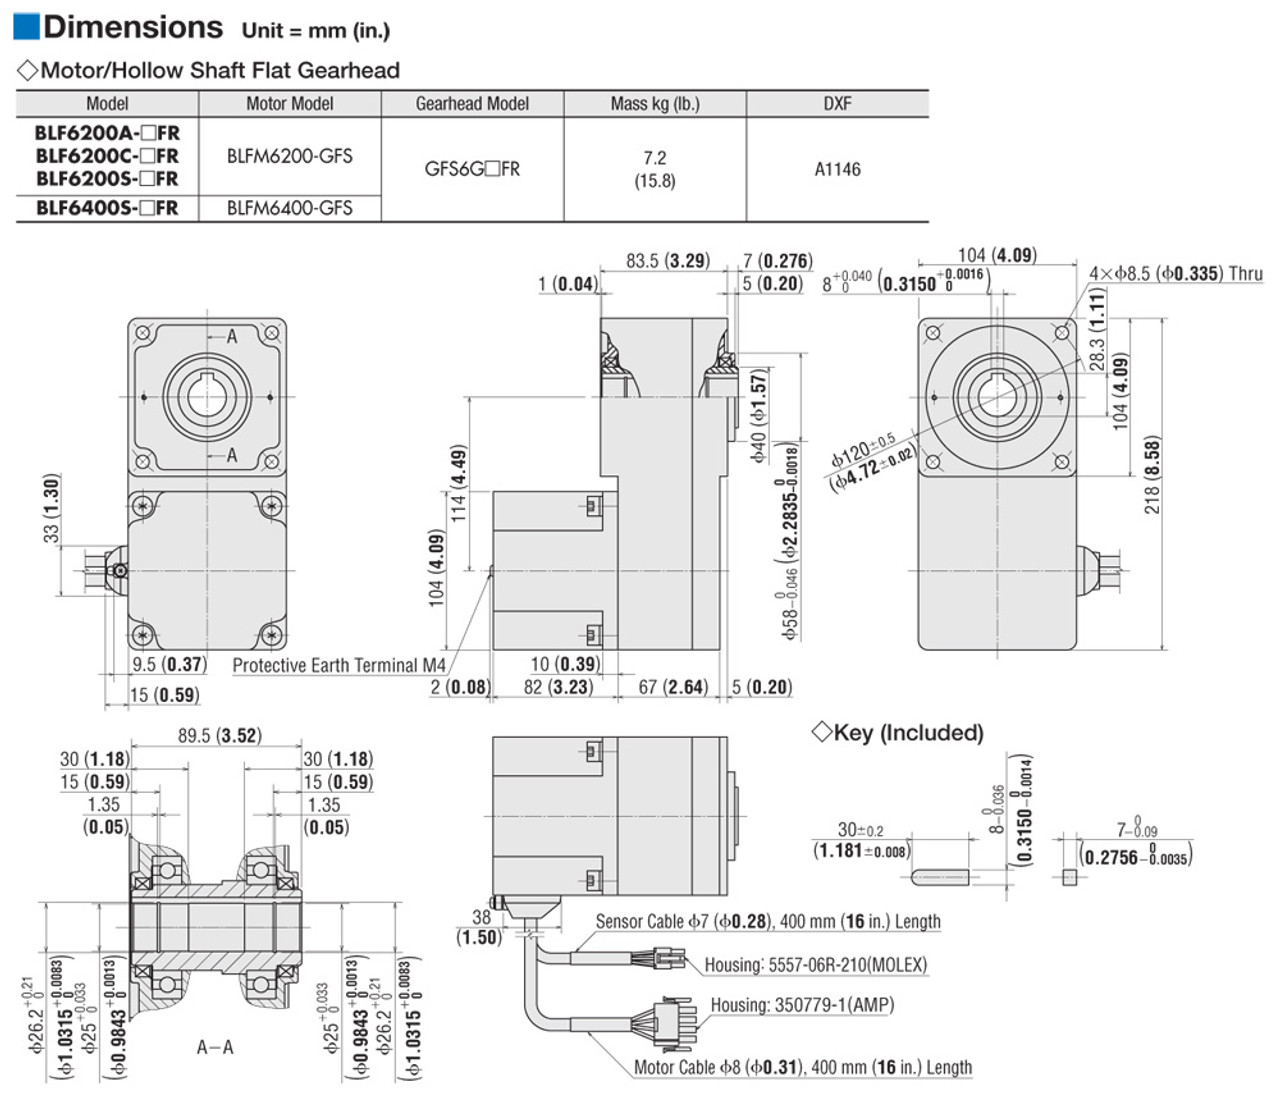 BLFM6400-GFS / GFS6G10FR - Dimensions